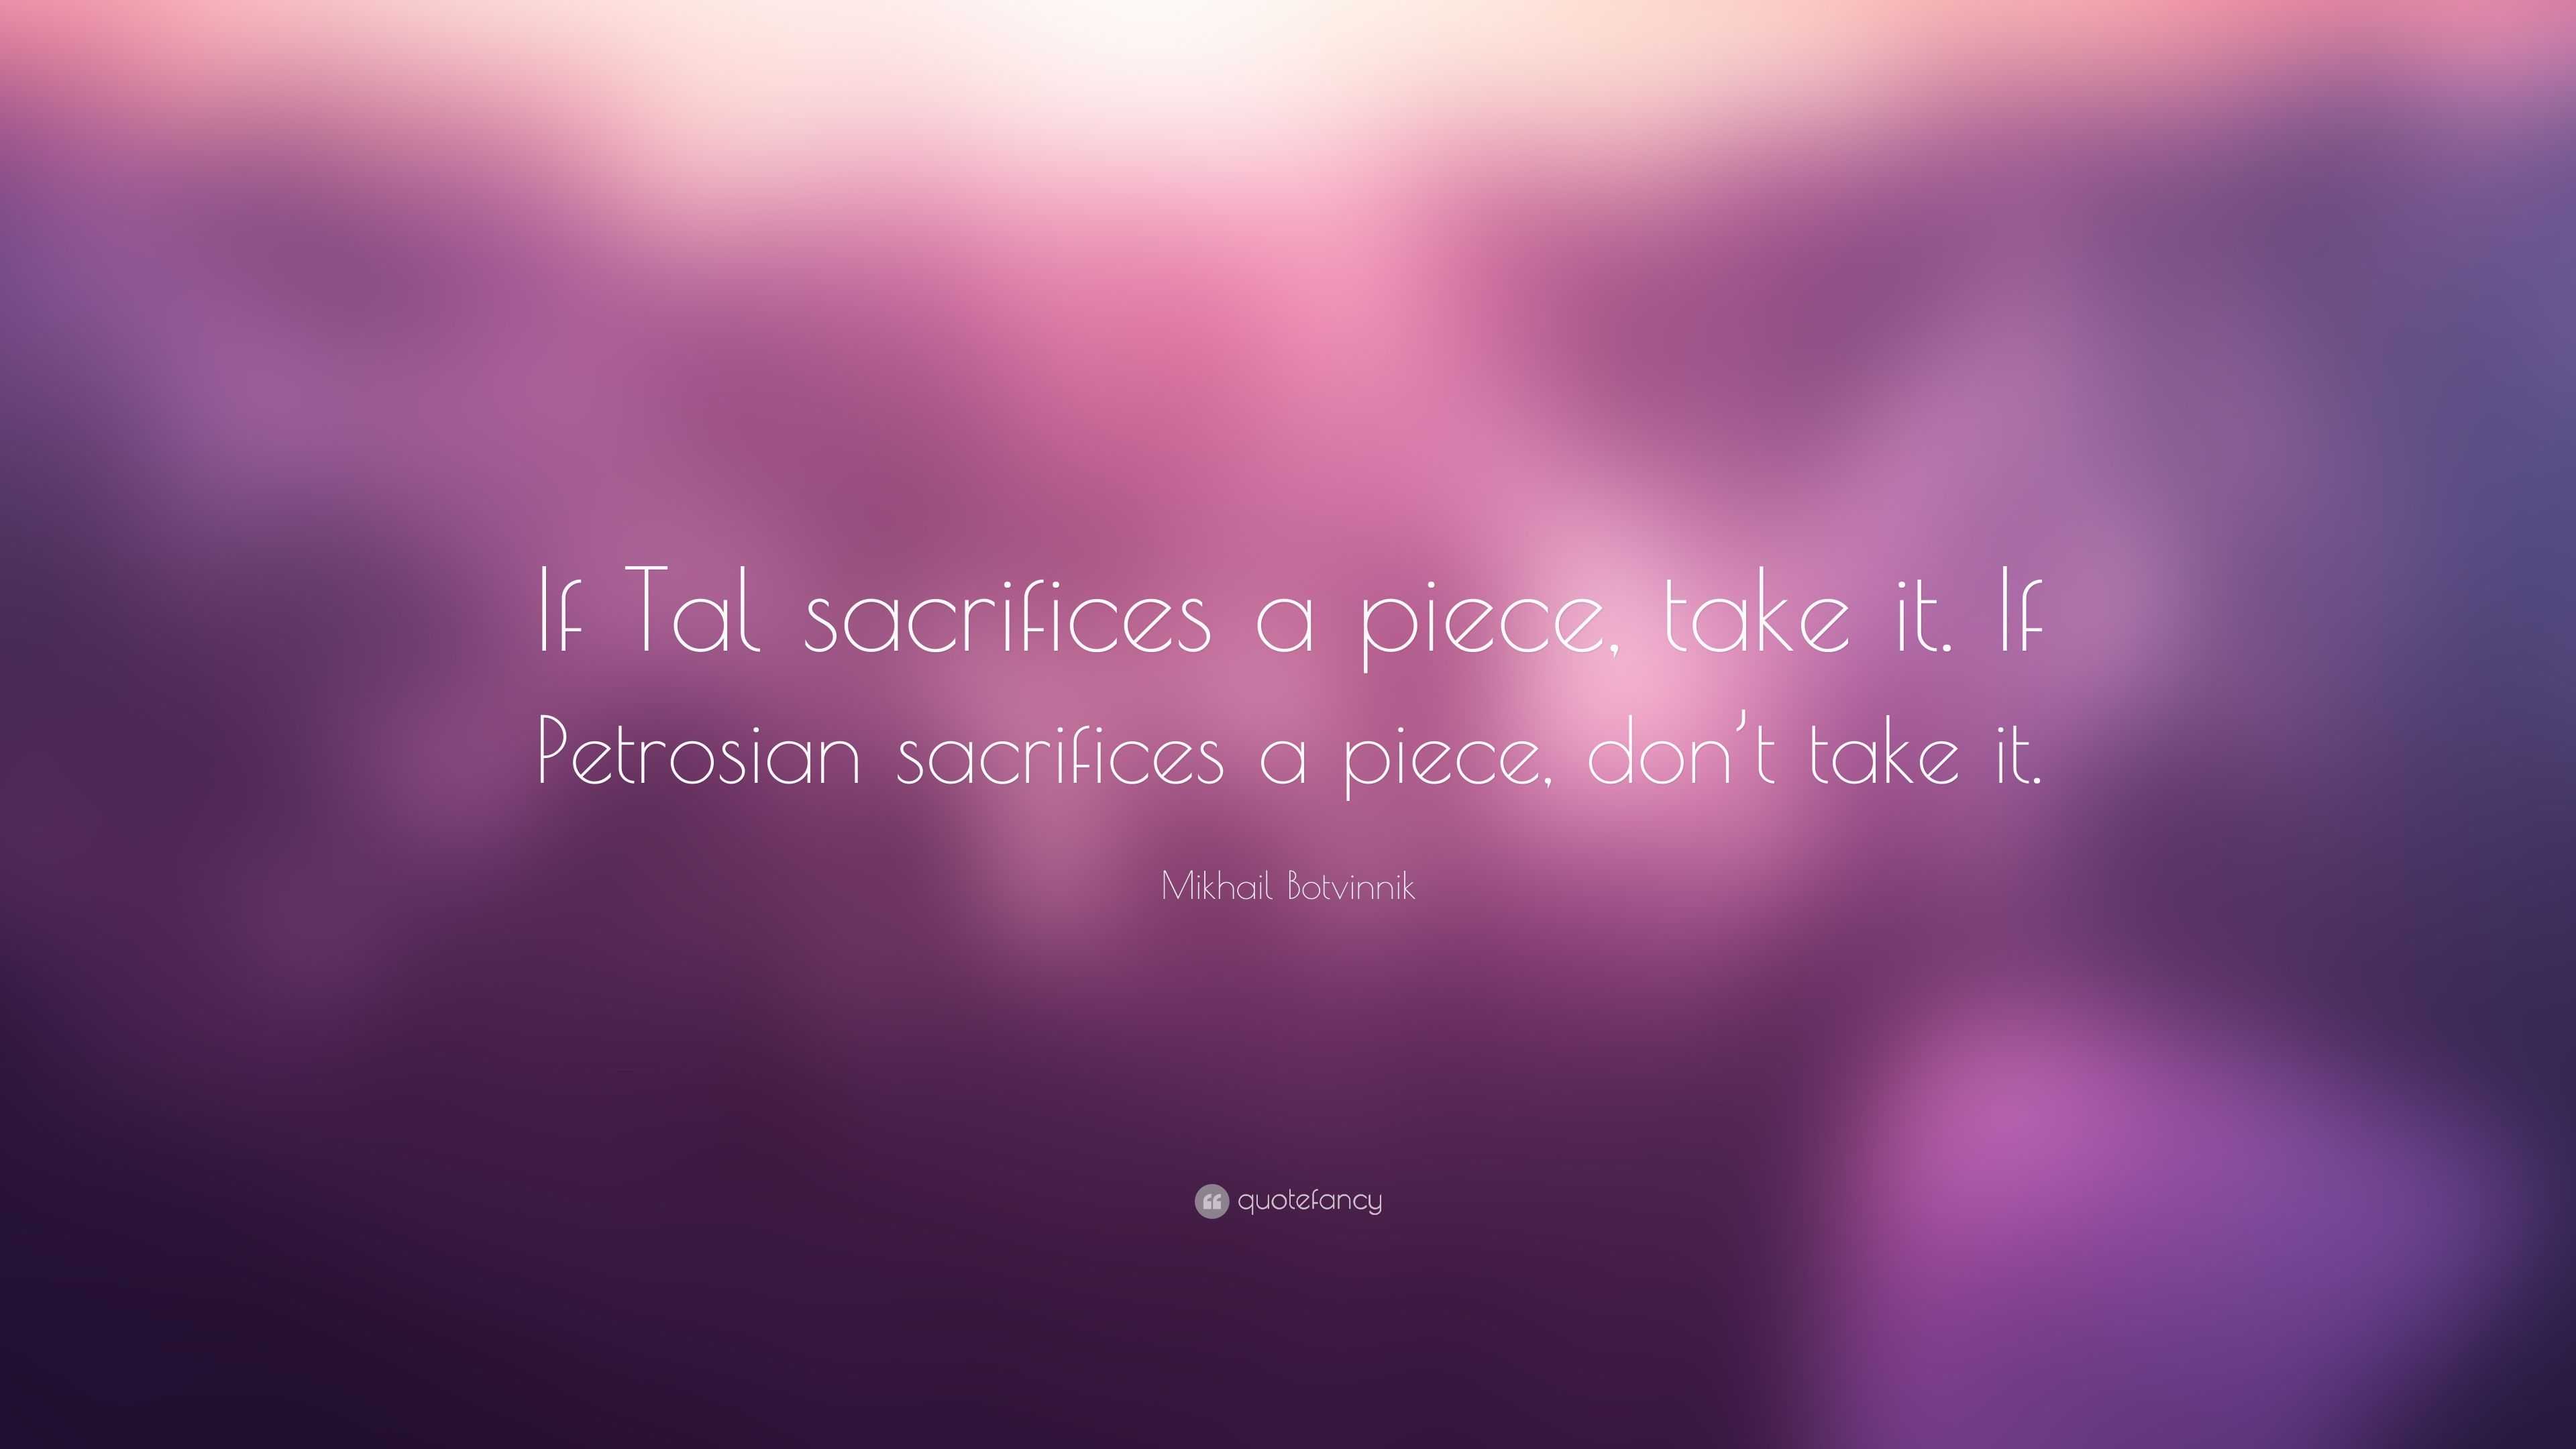 Mikhail Botvinnik quote: If Tal sacrifices a piece, take it. If Petrosian  sacrifices